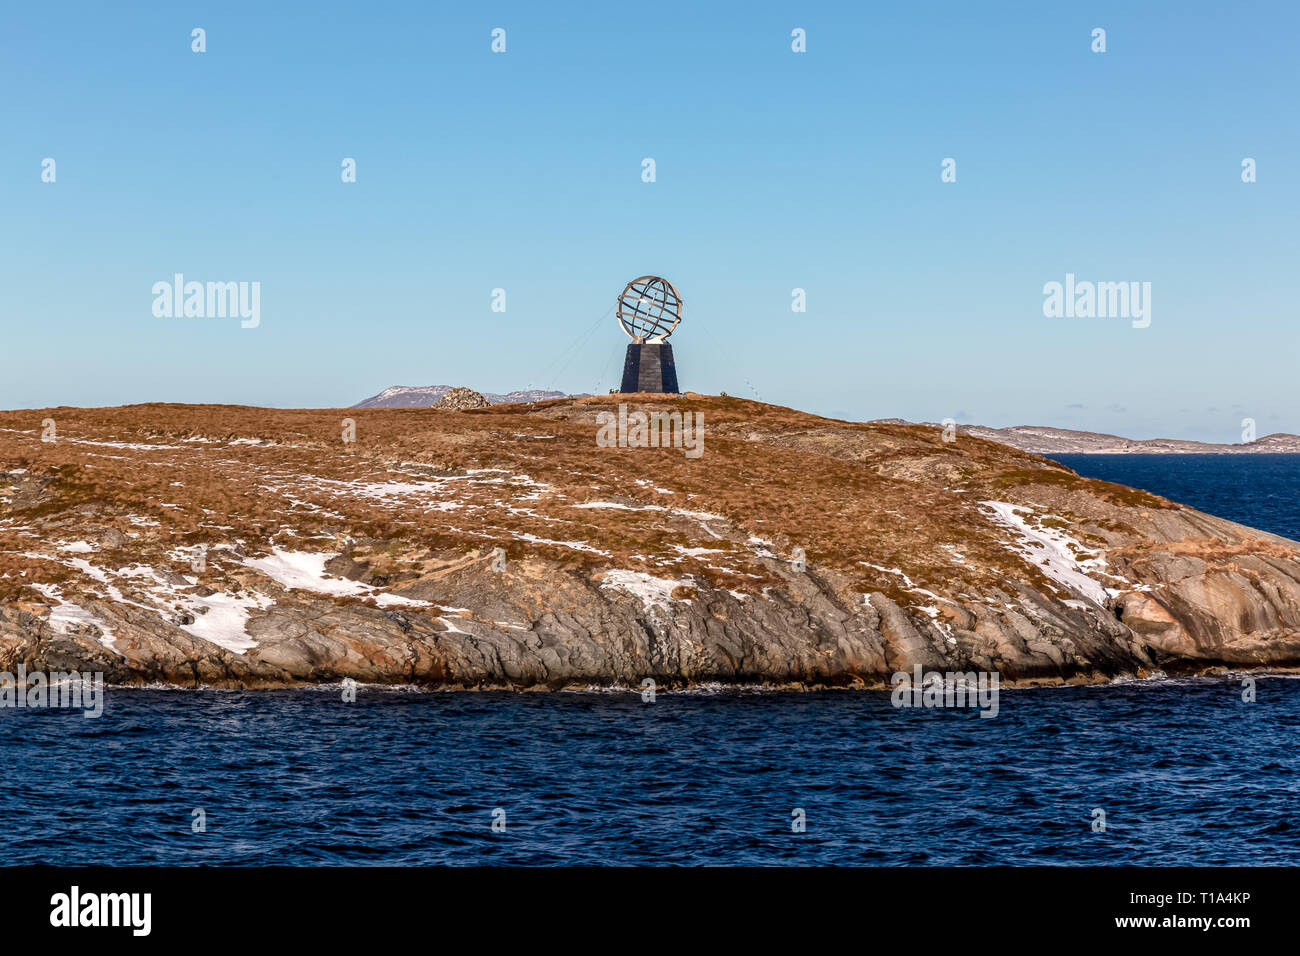 Il Circolo Polare Artico monumento sulla piccola isola di Vikingen in Norvegia, segnando la linea del Circolo Polare Artico. Foto Stock